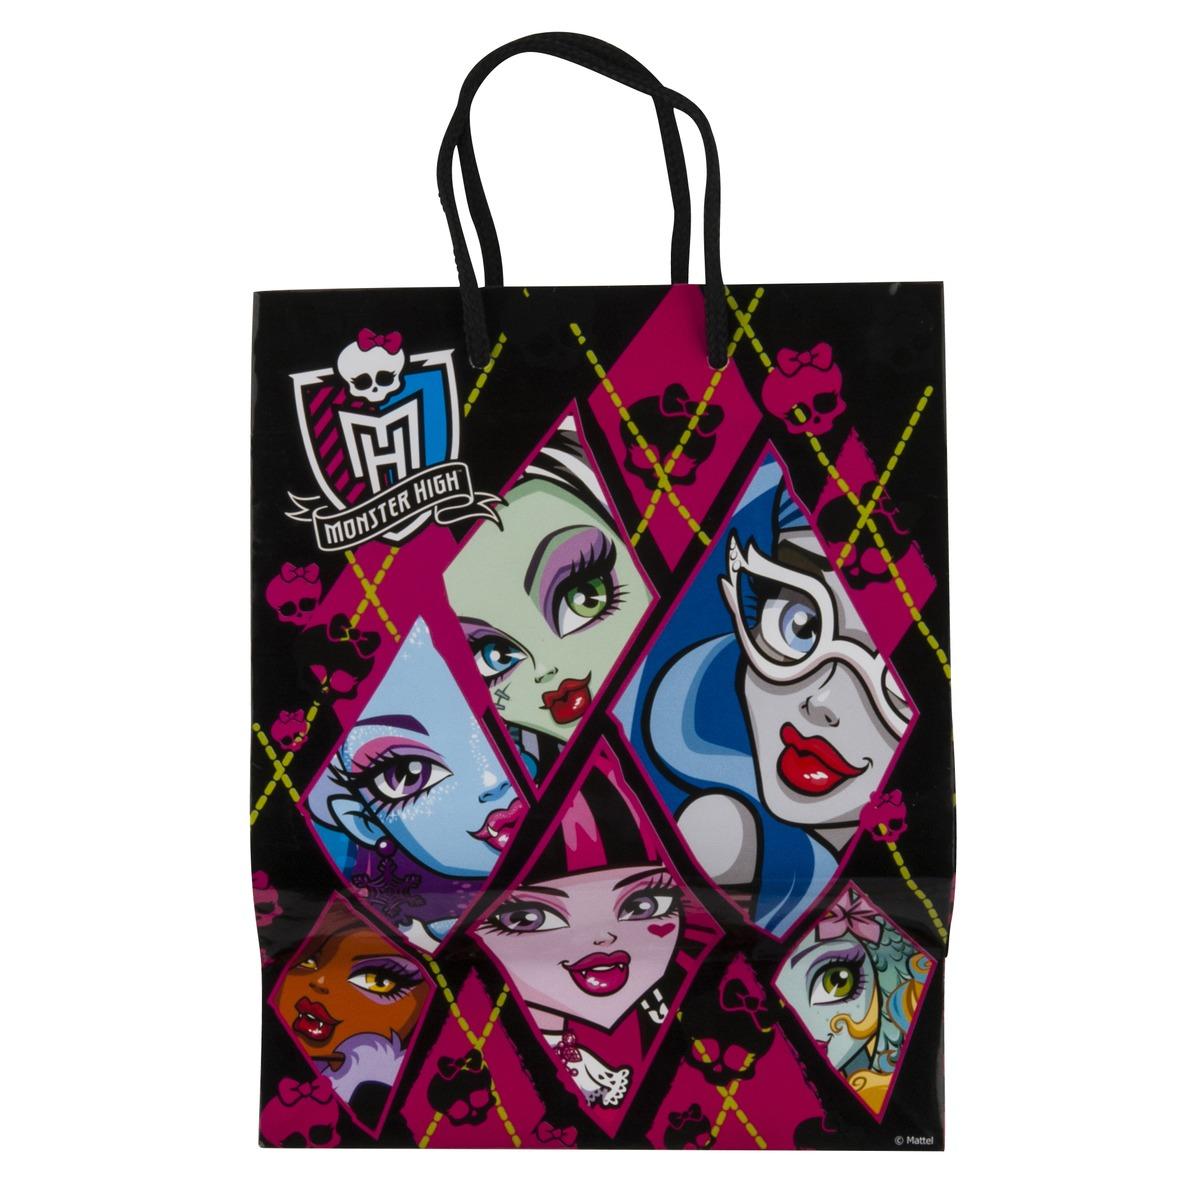 Sac cadeau M Monster High dance - 17,5 x 23 x 9,8 cm - Rose, noir